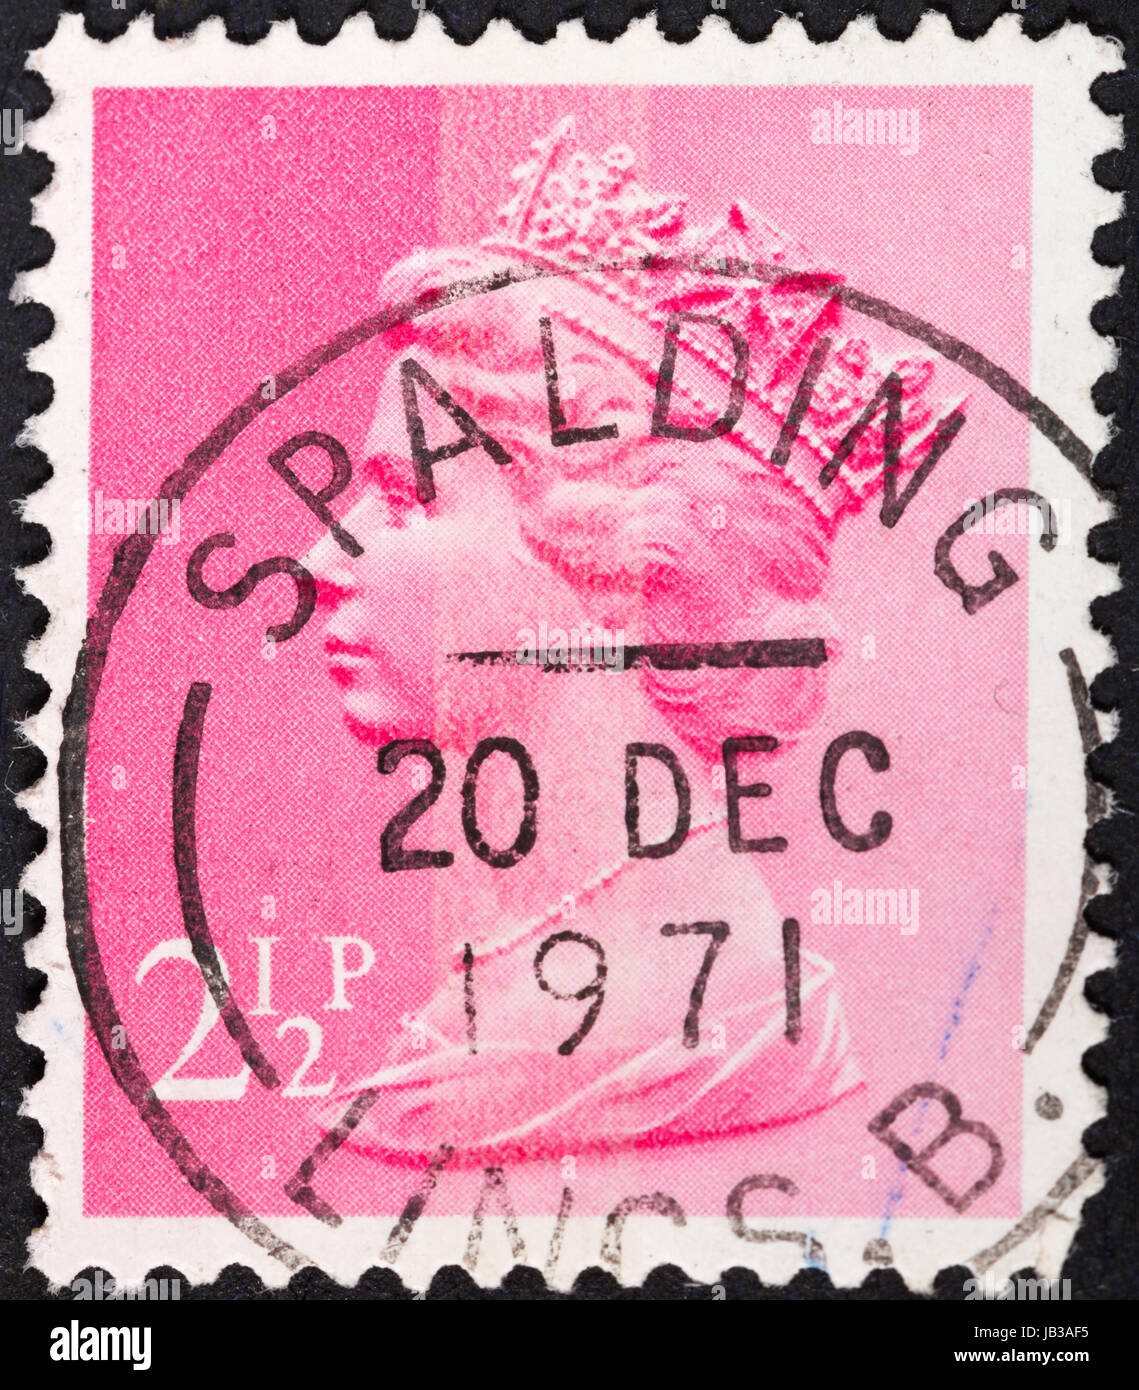 Royaume-uni - VERS 1972 : un timbre-poste imprimé au Royaume-Uni montre la reine Elizabeth à rose, vers 1972 Banque D'Images